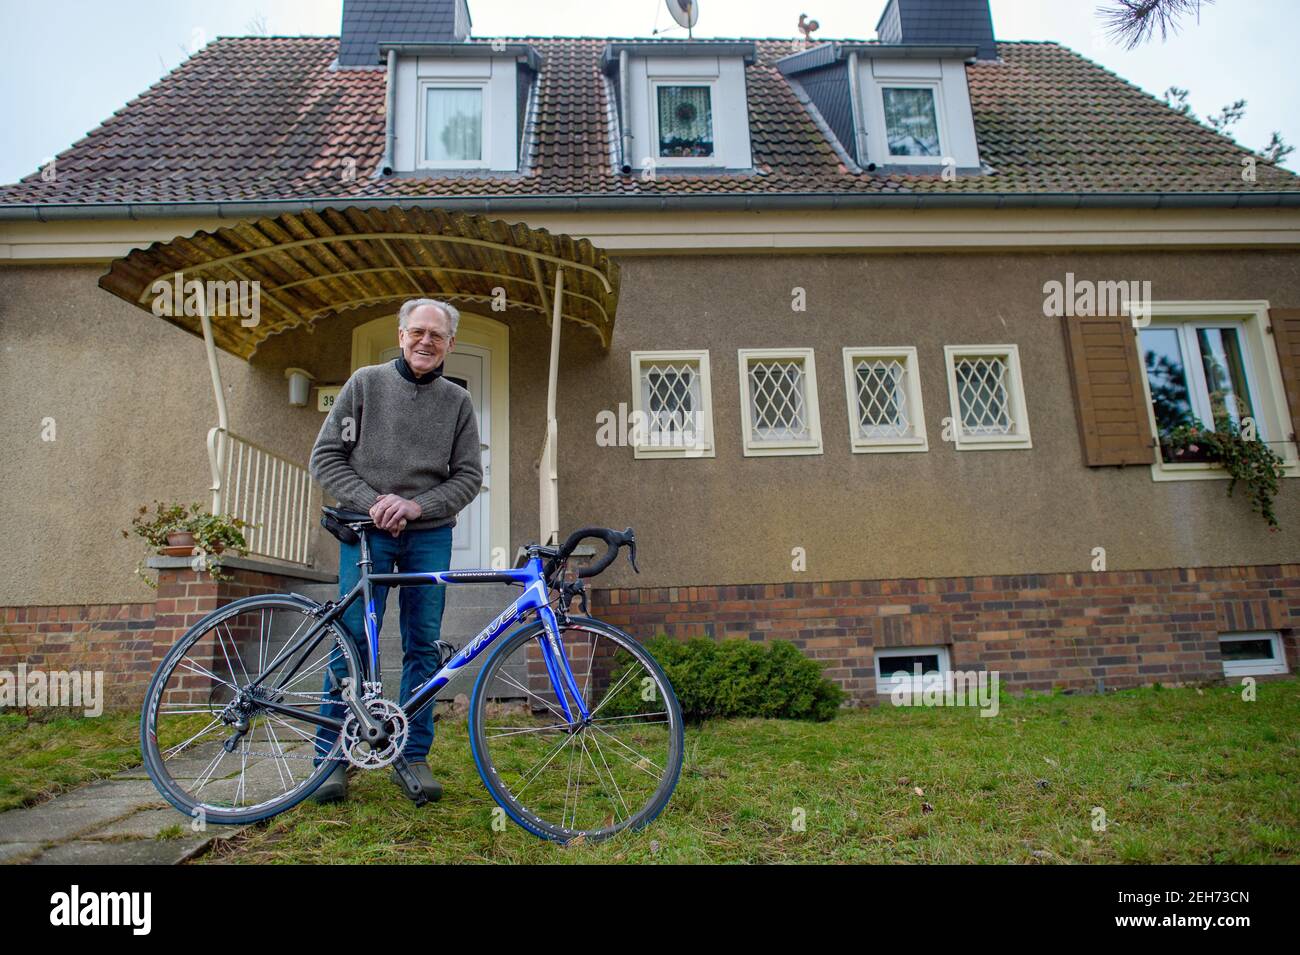 Heyrothsberge, Deutschland. Januar 2021, 22nd. Gustav-Adolf 'Täve' Schur  steht im Garten vor seinem Haus mit seinem Rennrad mit 'Täve' auf dem  Rahmen. Das Fahrrad wurde ihm von seinem Sohn zu seinem Geburtstag